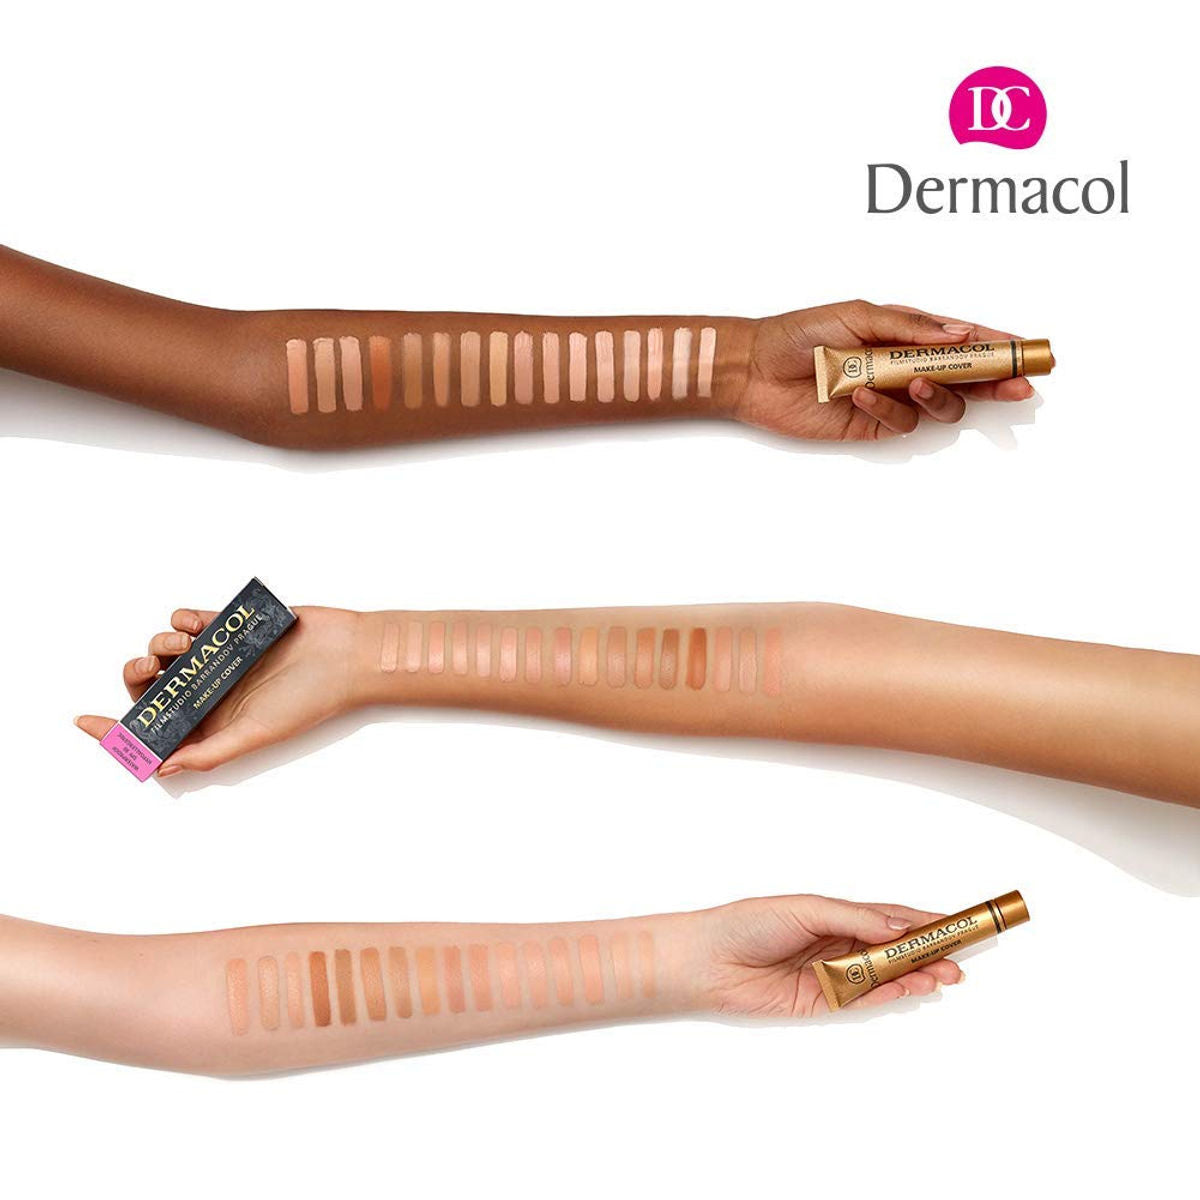 Dermacol Make-Up Cover 211-Light Beige-Rosy Dermacol